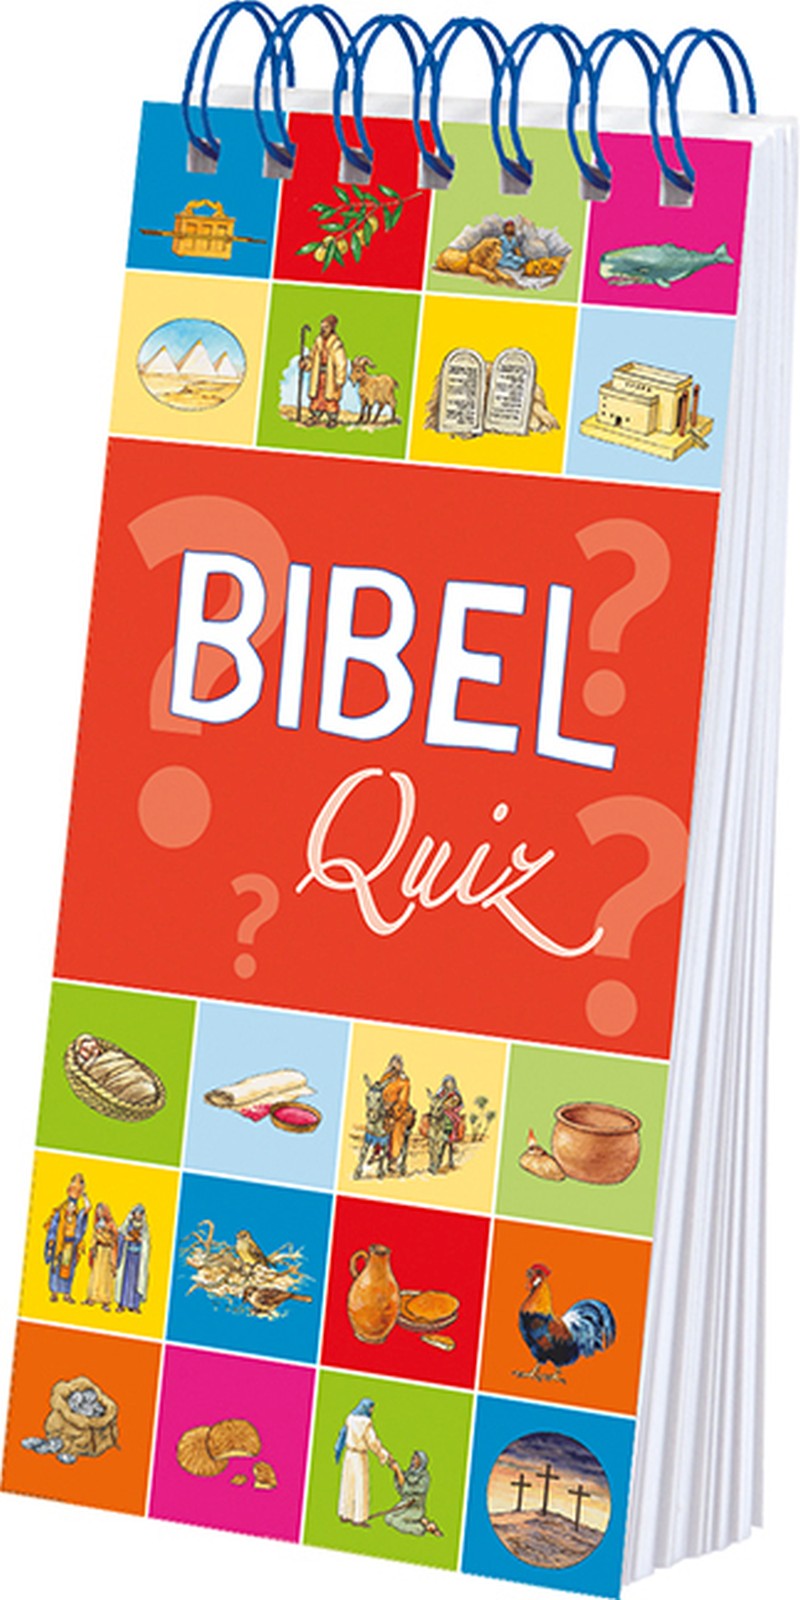 Bibel-Quiz